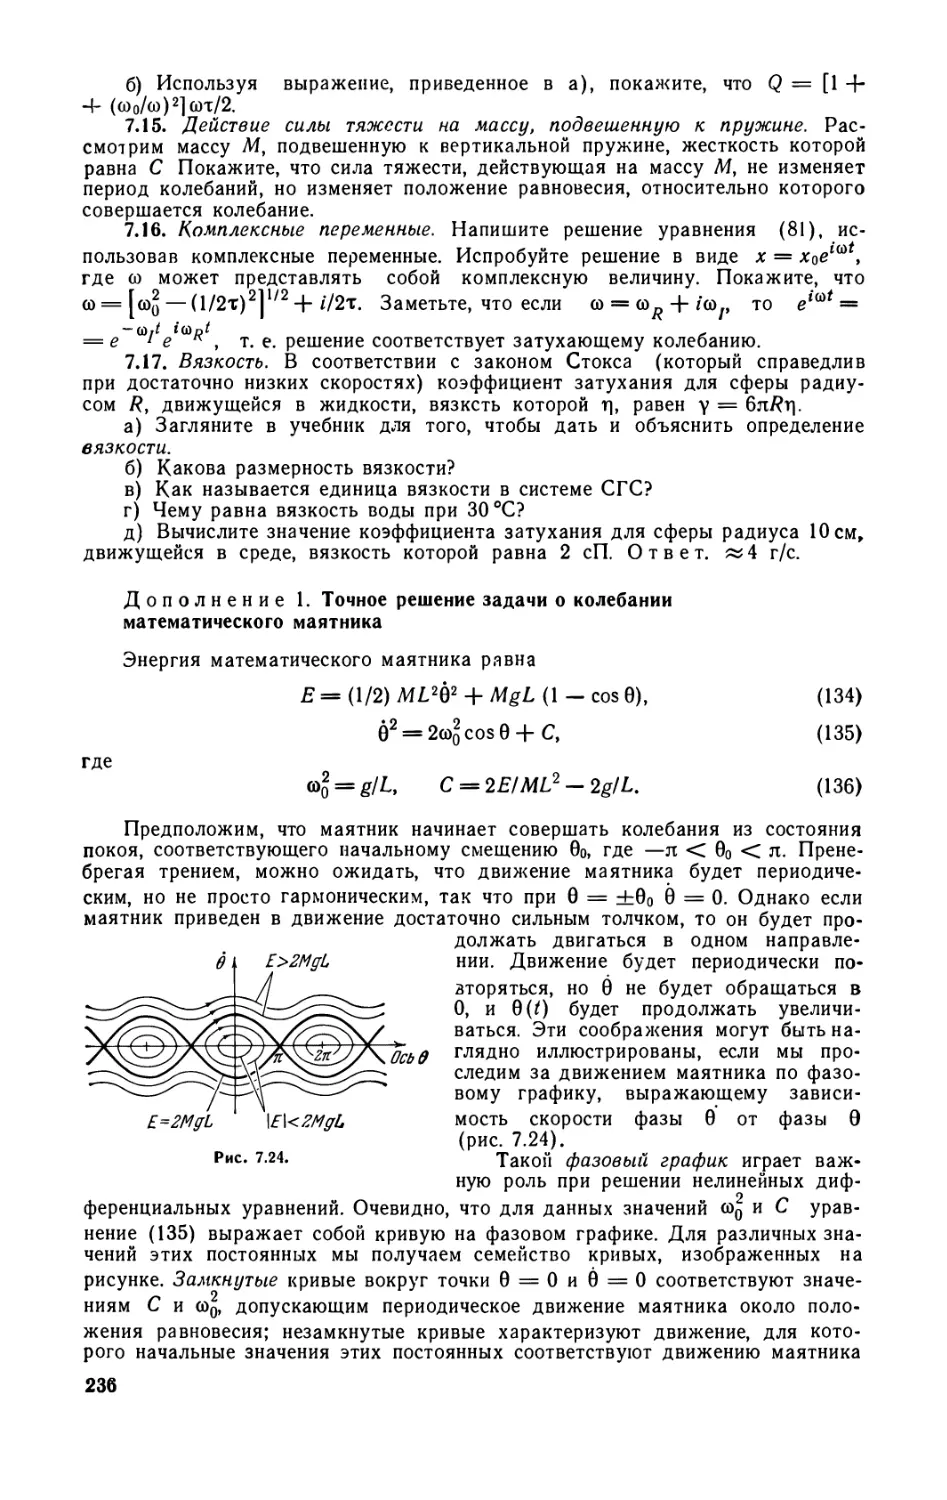 Дополнение 1. Точное решение задачи о колебании математического маятника